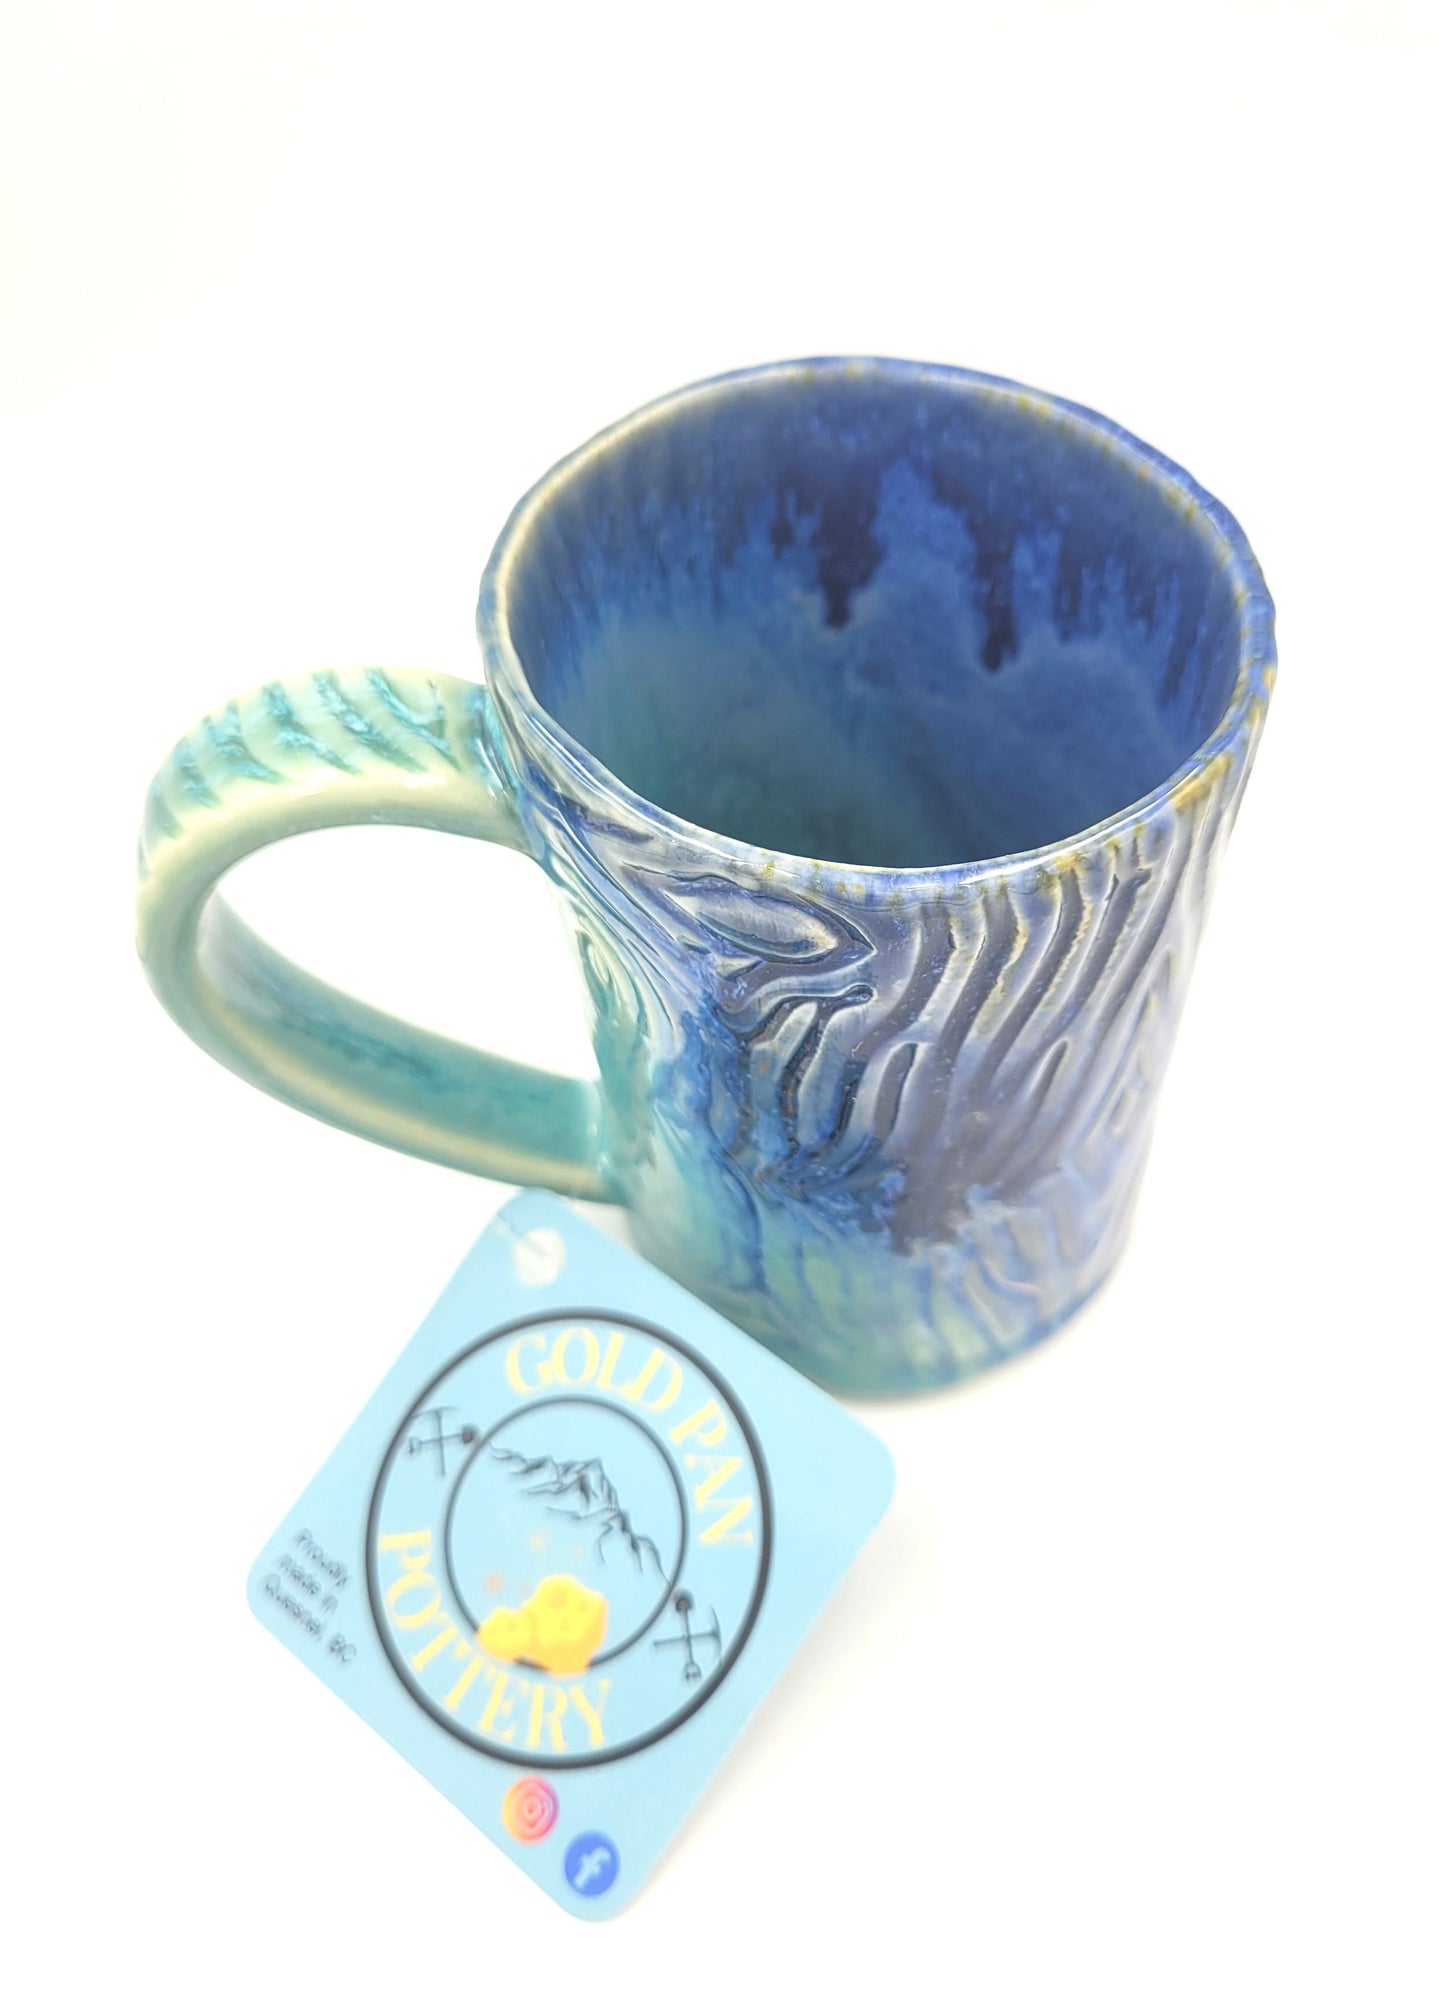 Handmade blue and teal pottery mug